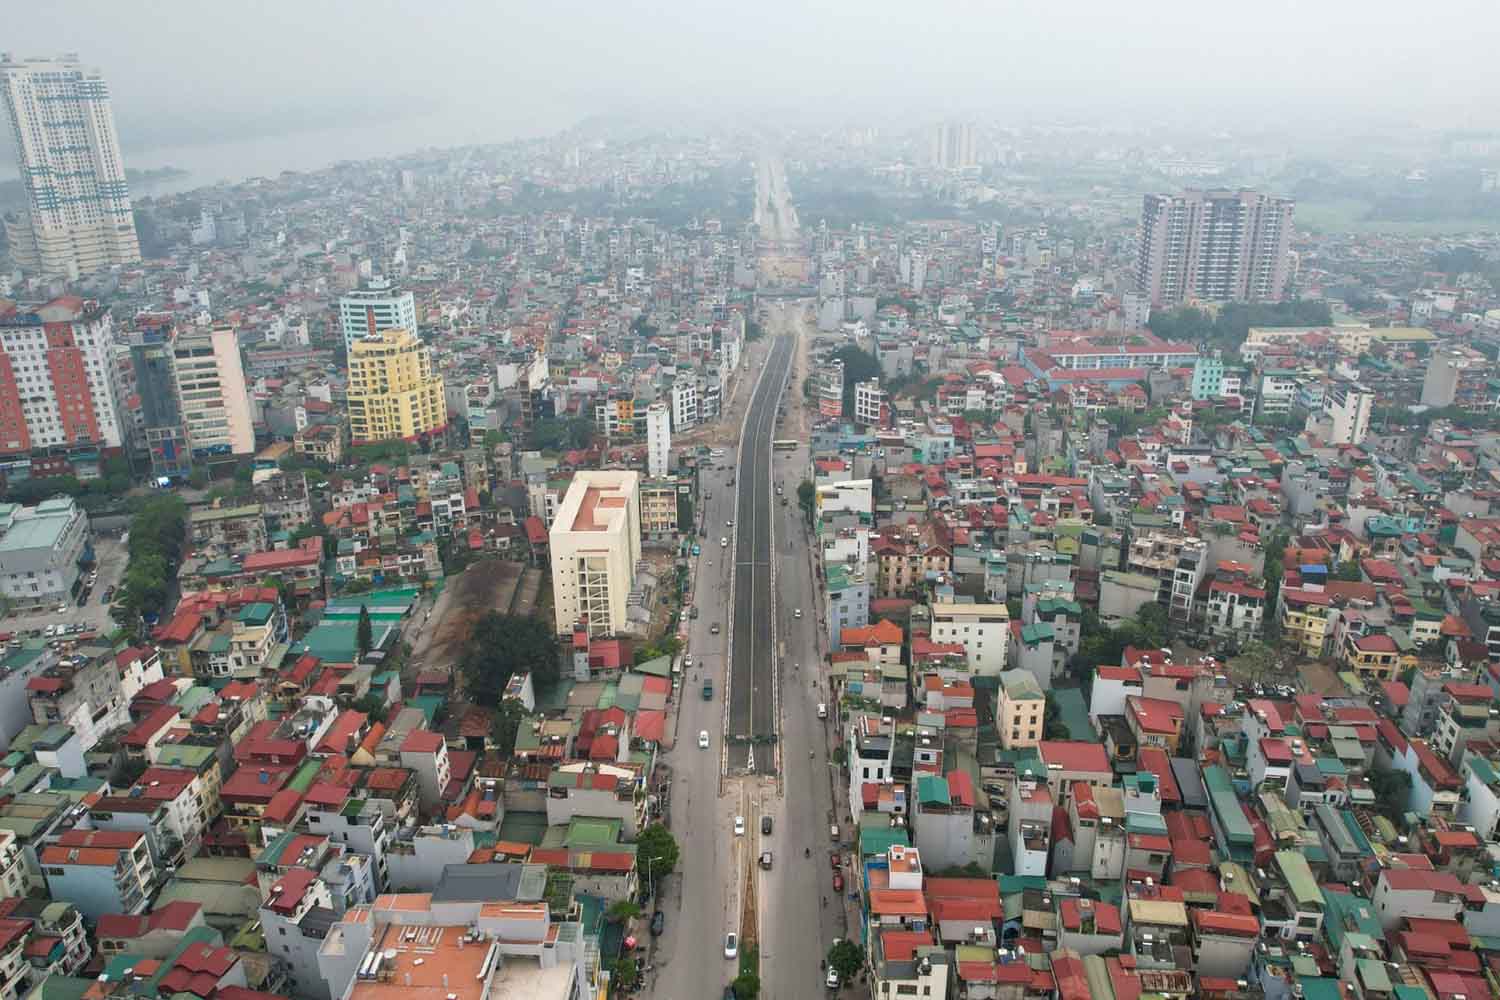 Điểm nhấn của tuyến đường là cầu vượt thép trên phố Hồng Tiến, vượt qua đường Nguyễn Văn Cừ, với chiều dài và đường dẫn khoảng 400 m, được thiết kế 2 làn xe cơ giới và 2 làn xe hỗn hợp. Cầu hiện hoàn thành lan can và đổ bêtông bề mặt.